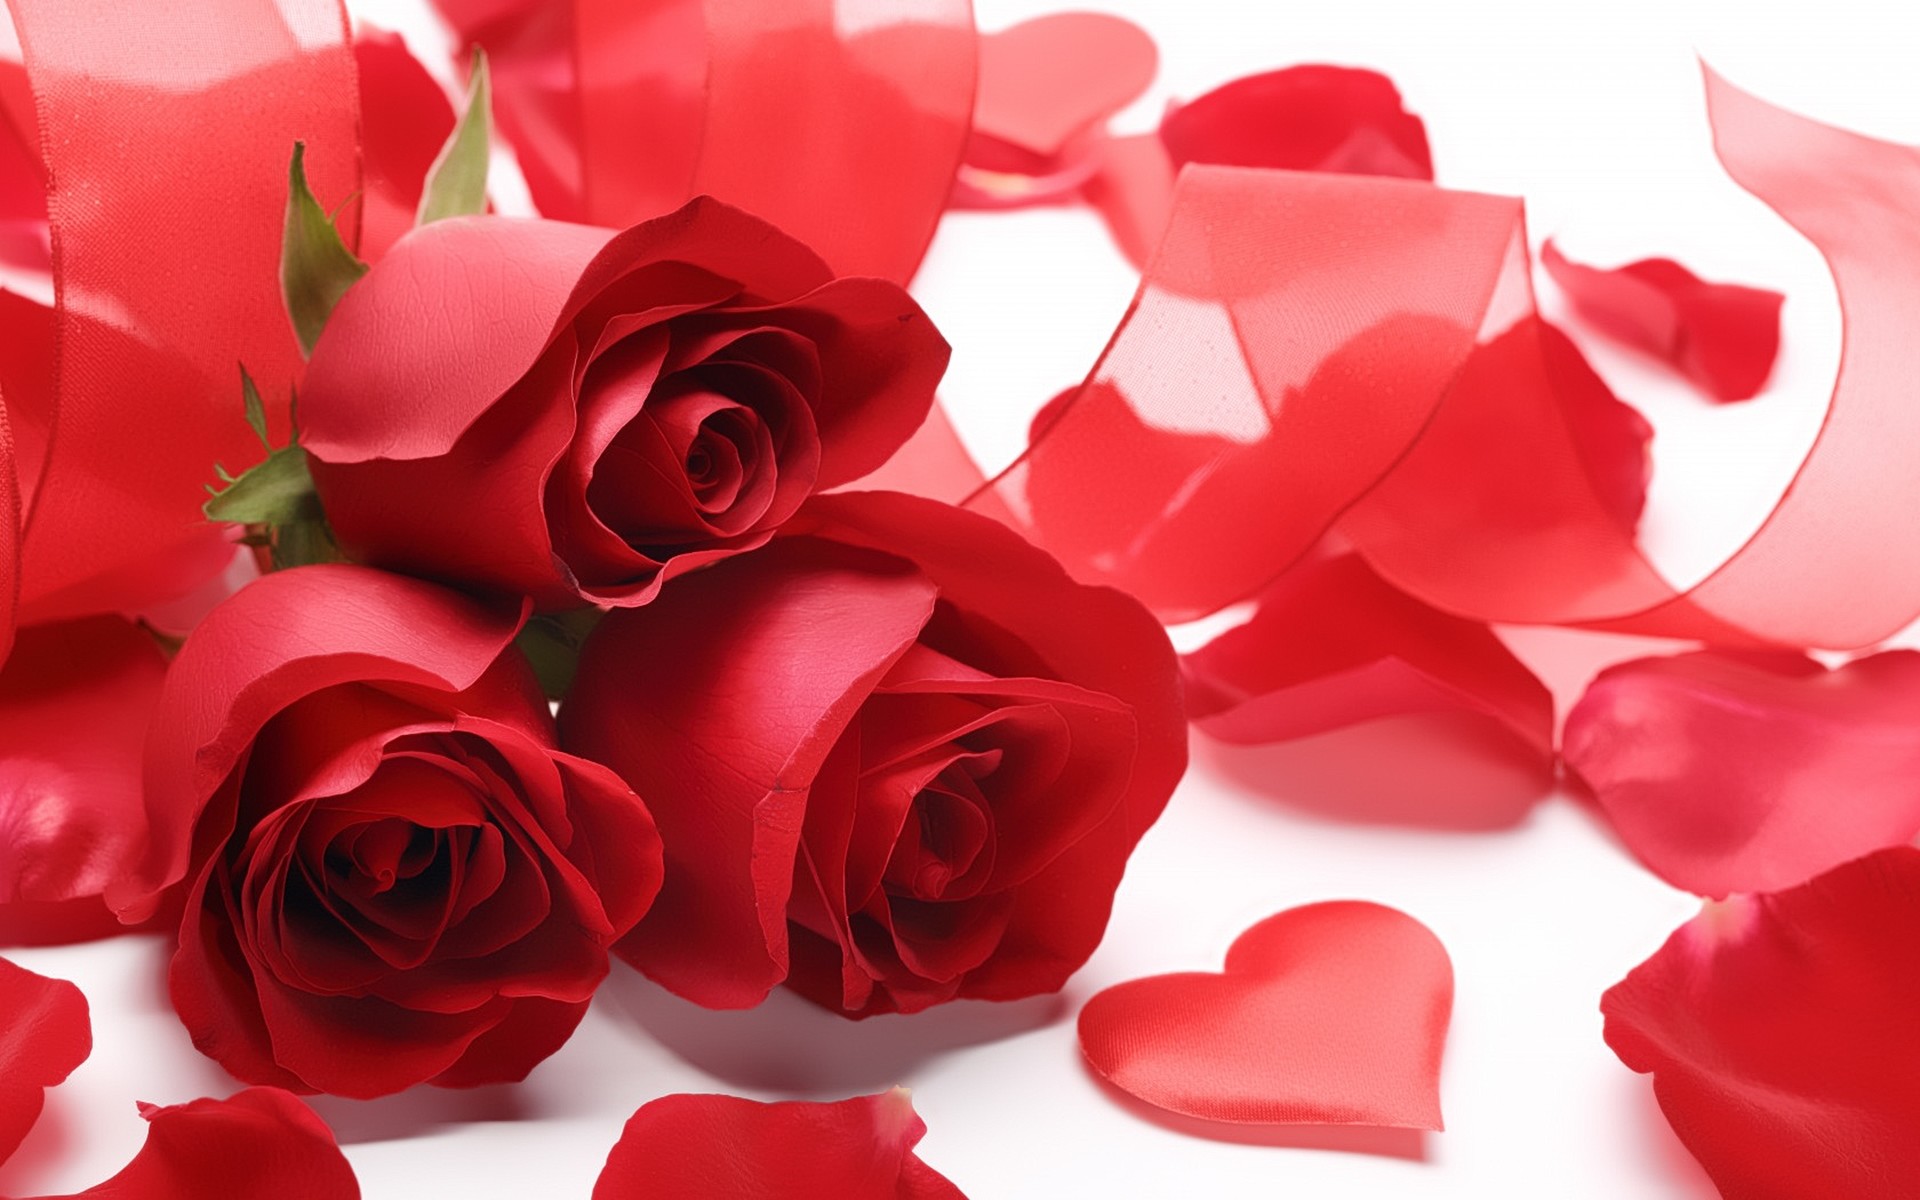 Free Love Rose Wallpaper Downloads 100 Love Rose Wallpapers for FREE   Wallpaperscom